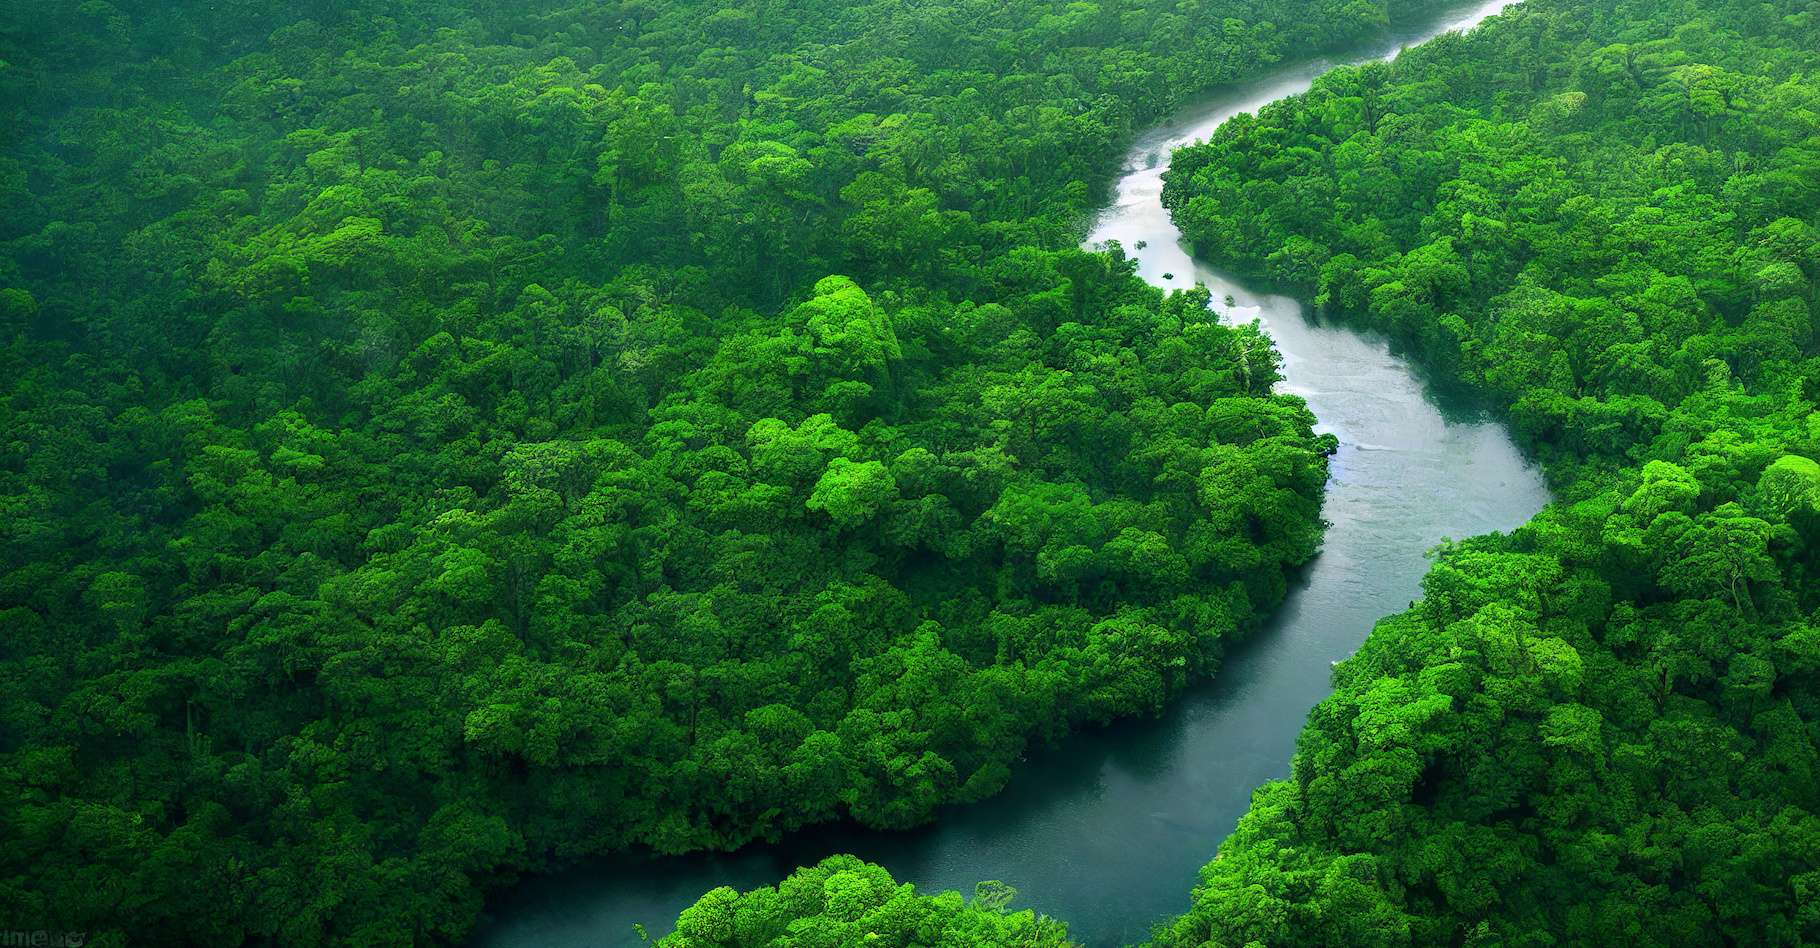 Entre sécheresse extrême et désespoir Humain : quand le fleuve Amazone ne coule plus